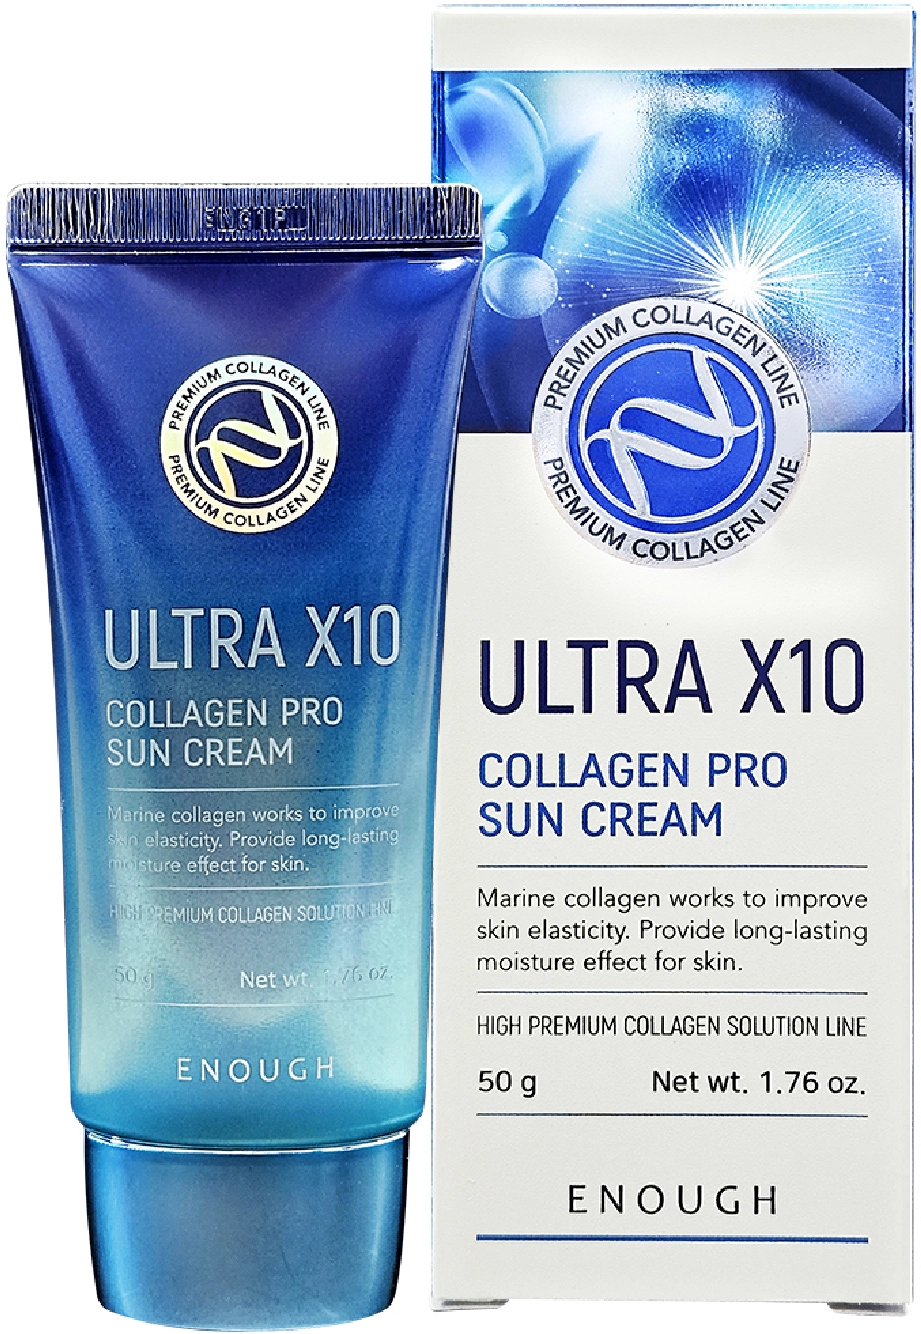 Сонцезахисний крем з колагеном - Enough Ultra X10 Collagen Pro Sun Cream, 50 мл - фото N2